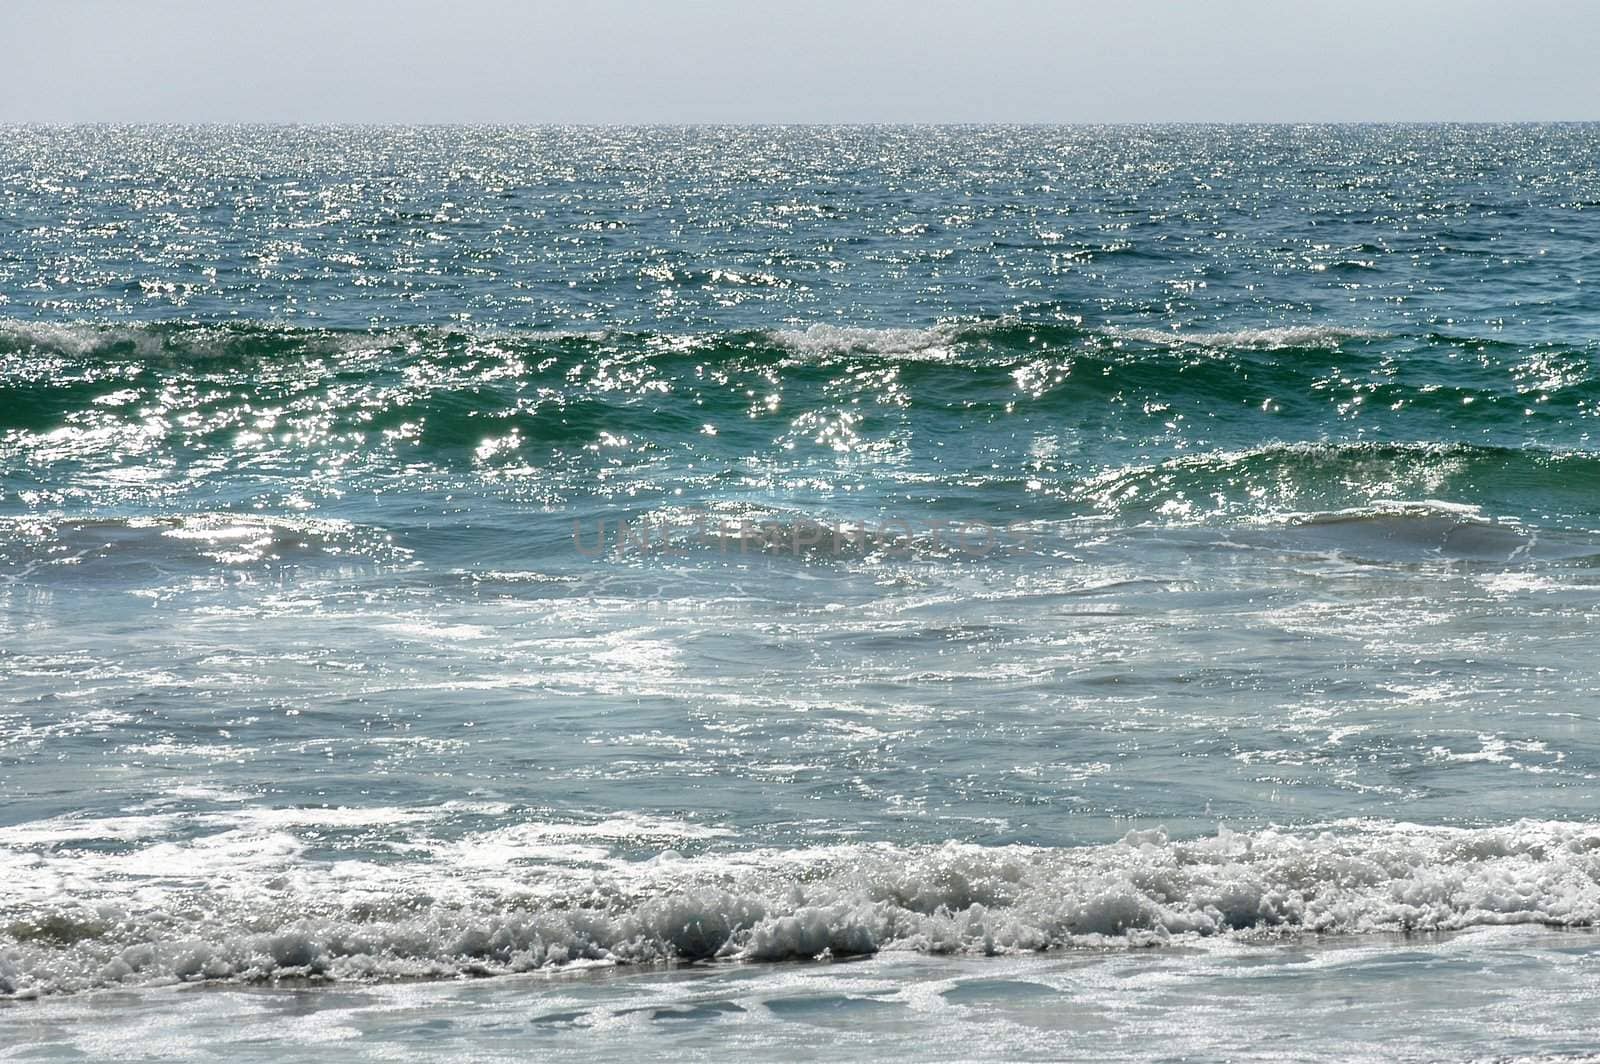 Waves in Puerto Escondido, Mexico by haak78